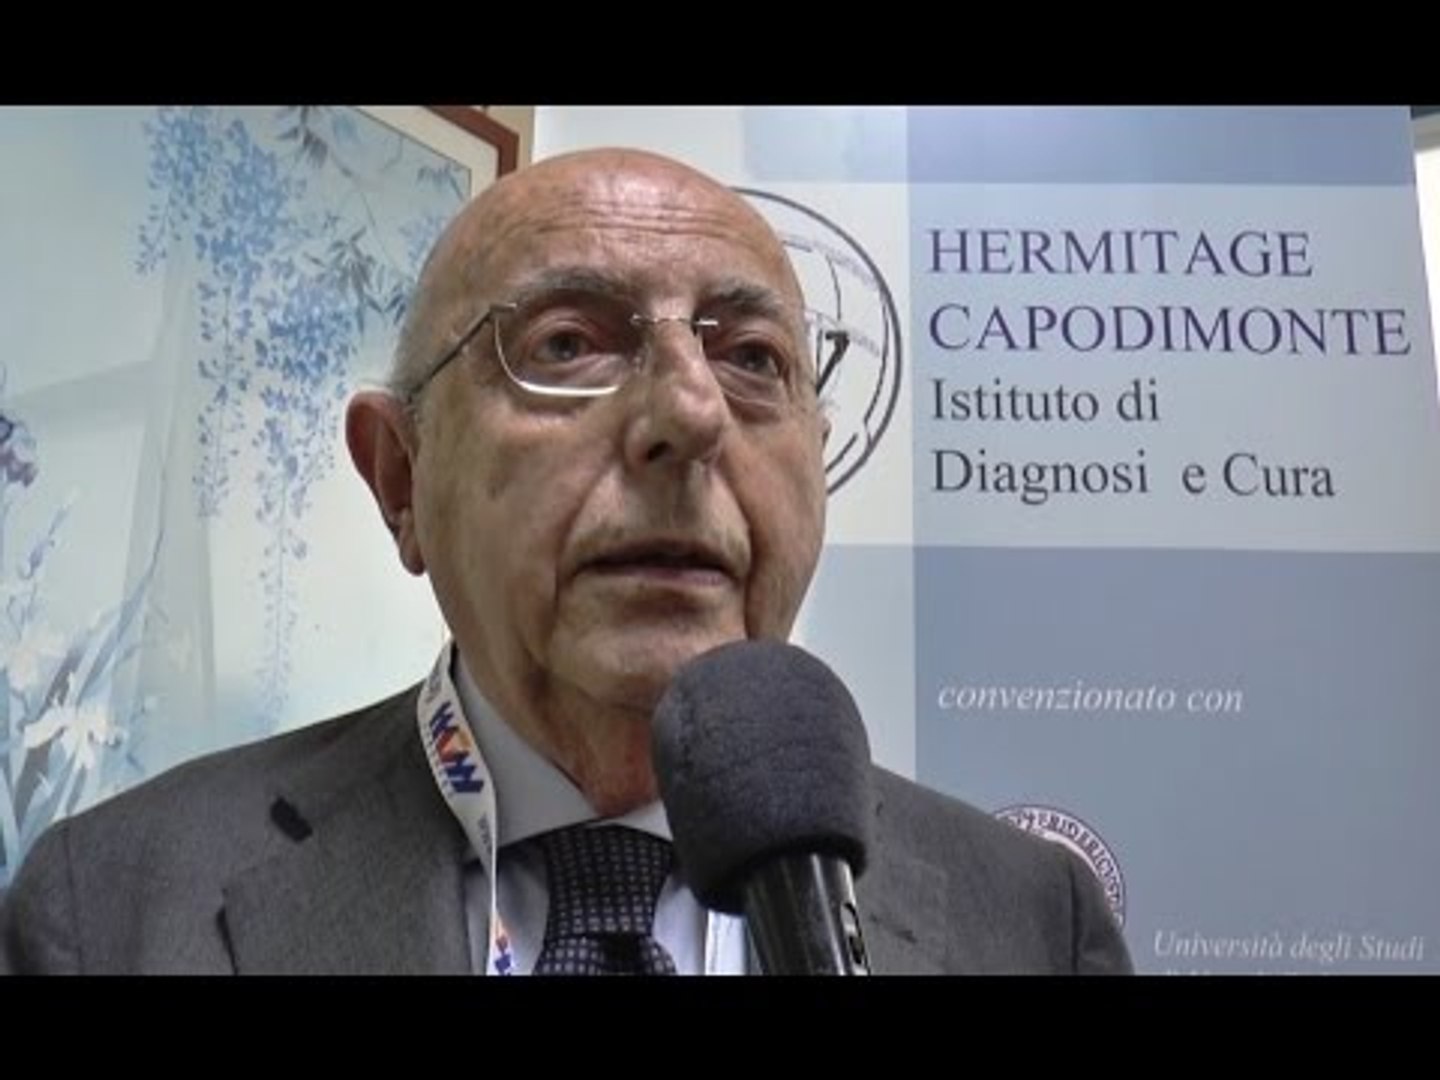 Napoli - Depressione e terapie, convegno all'Hermitage Capodimonte  (13.05.17) - Video Dailymotion